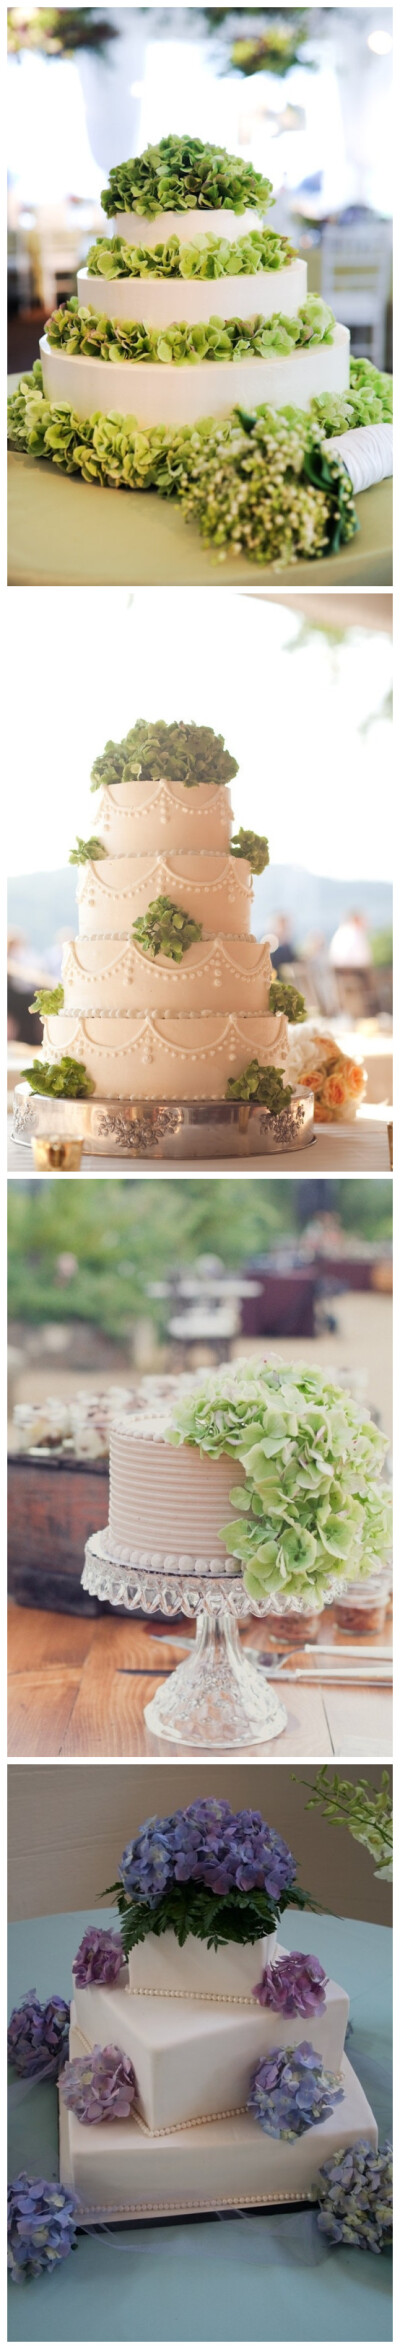 饱满馥郁的绣球花，给人可爱娇艳之感，当它与蛋糕结合，让本来非常简单的蛋糕制造出浪漫四溢的甜蜜氛围。